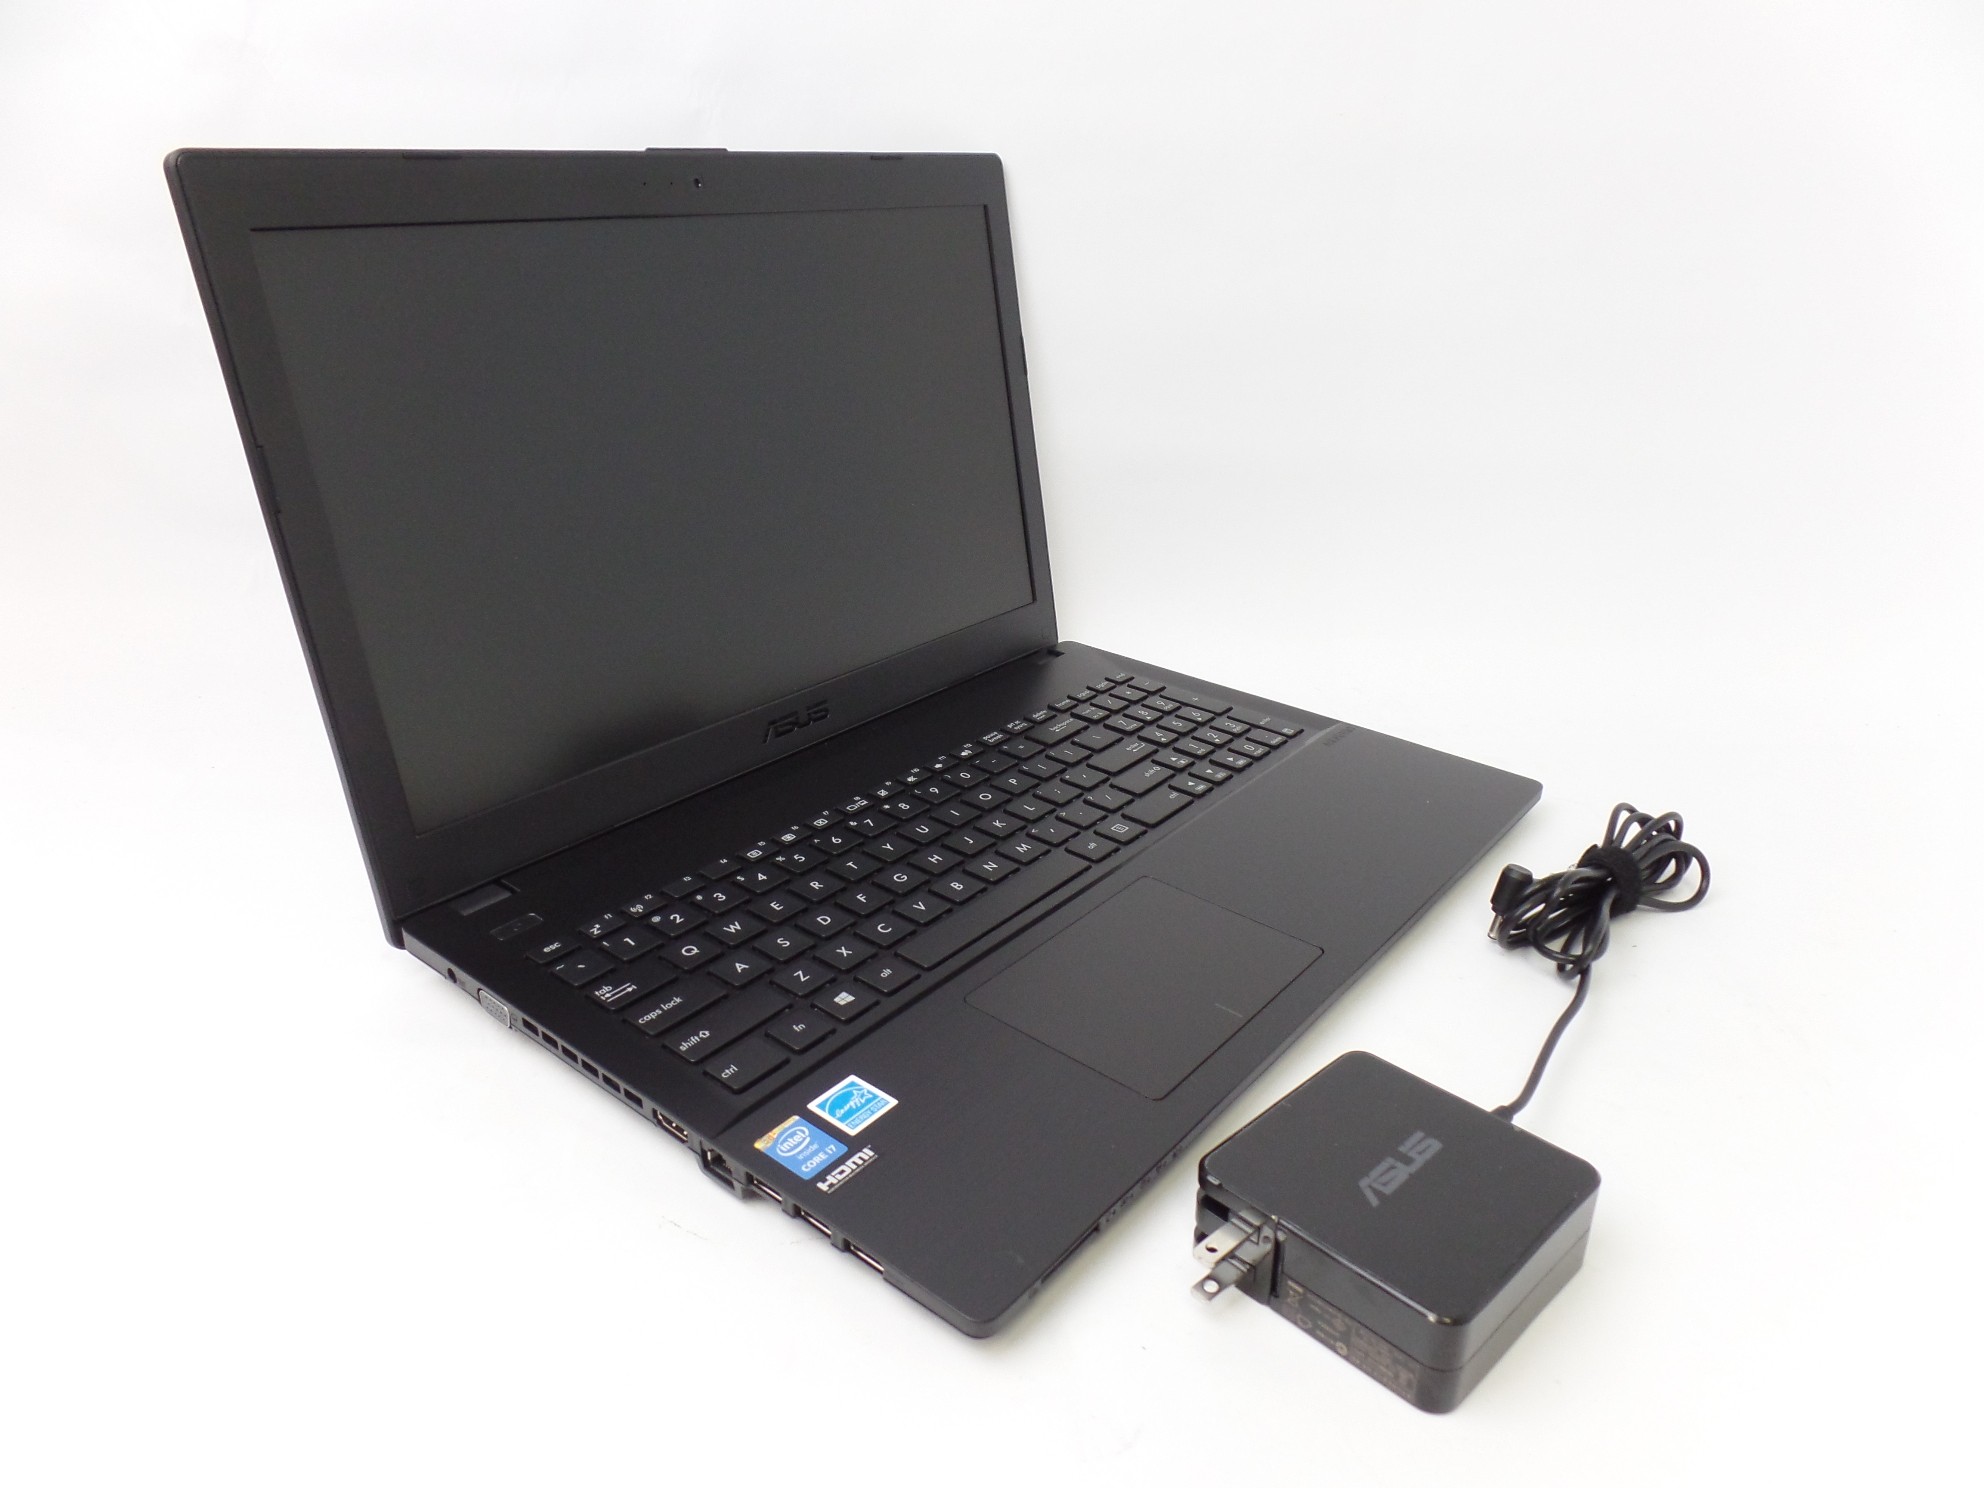 Asus P2520LA-XH71 15.6" HD i7-5500U 2.4GHz 8GB 500GB HDD W10P Laptop U